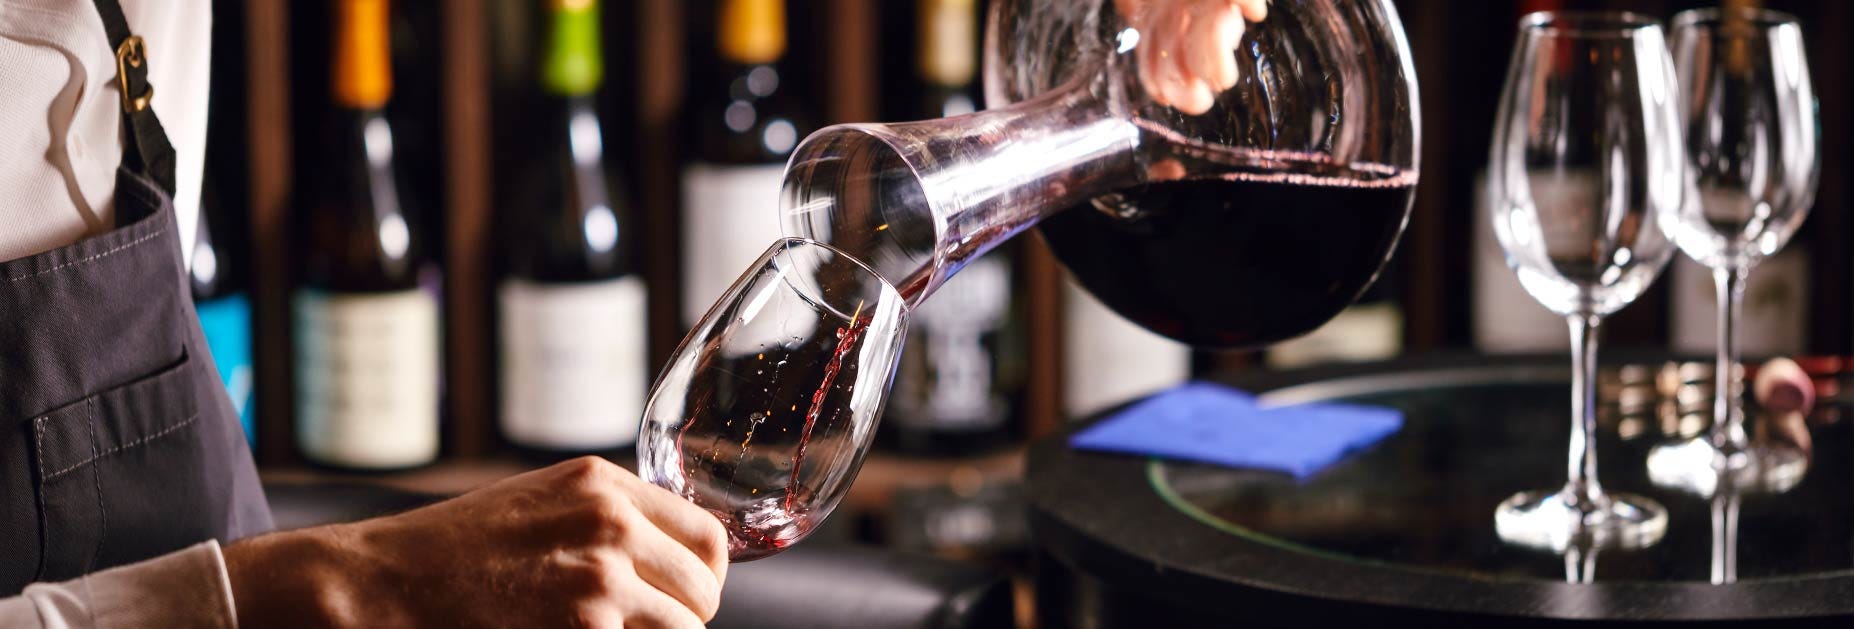 Wein fliesst aus einer Karaffe in ein Weinglas